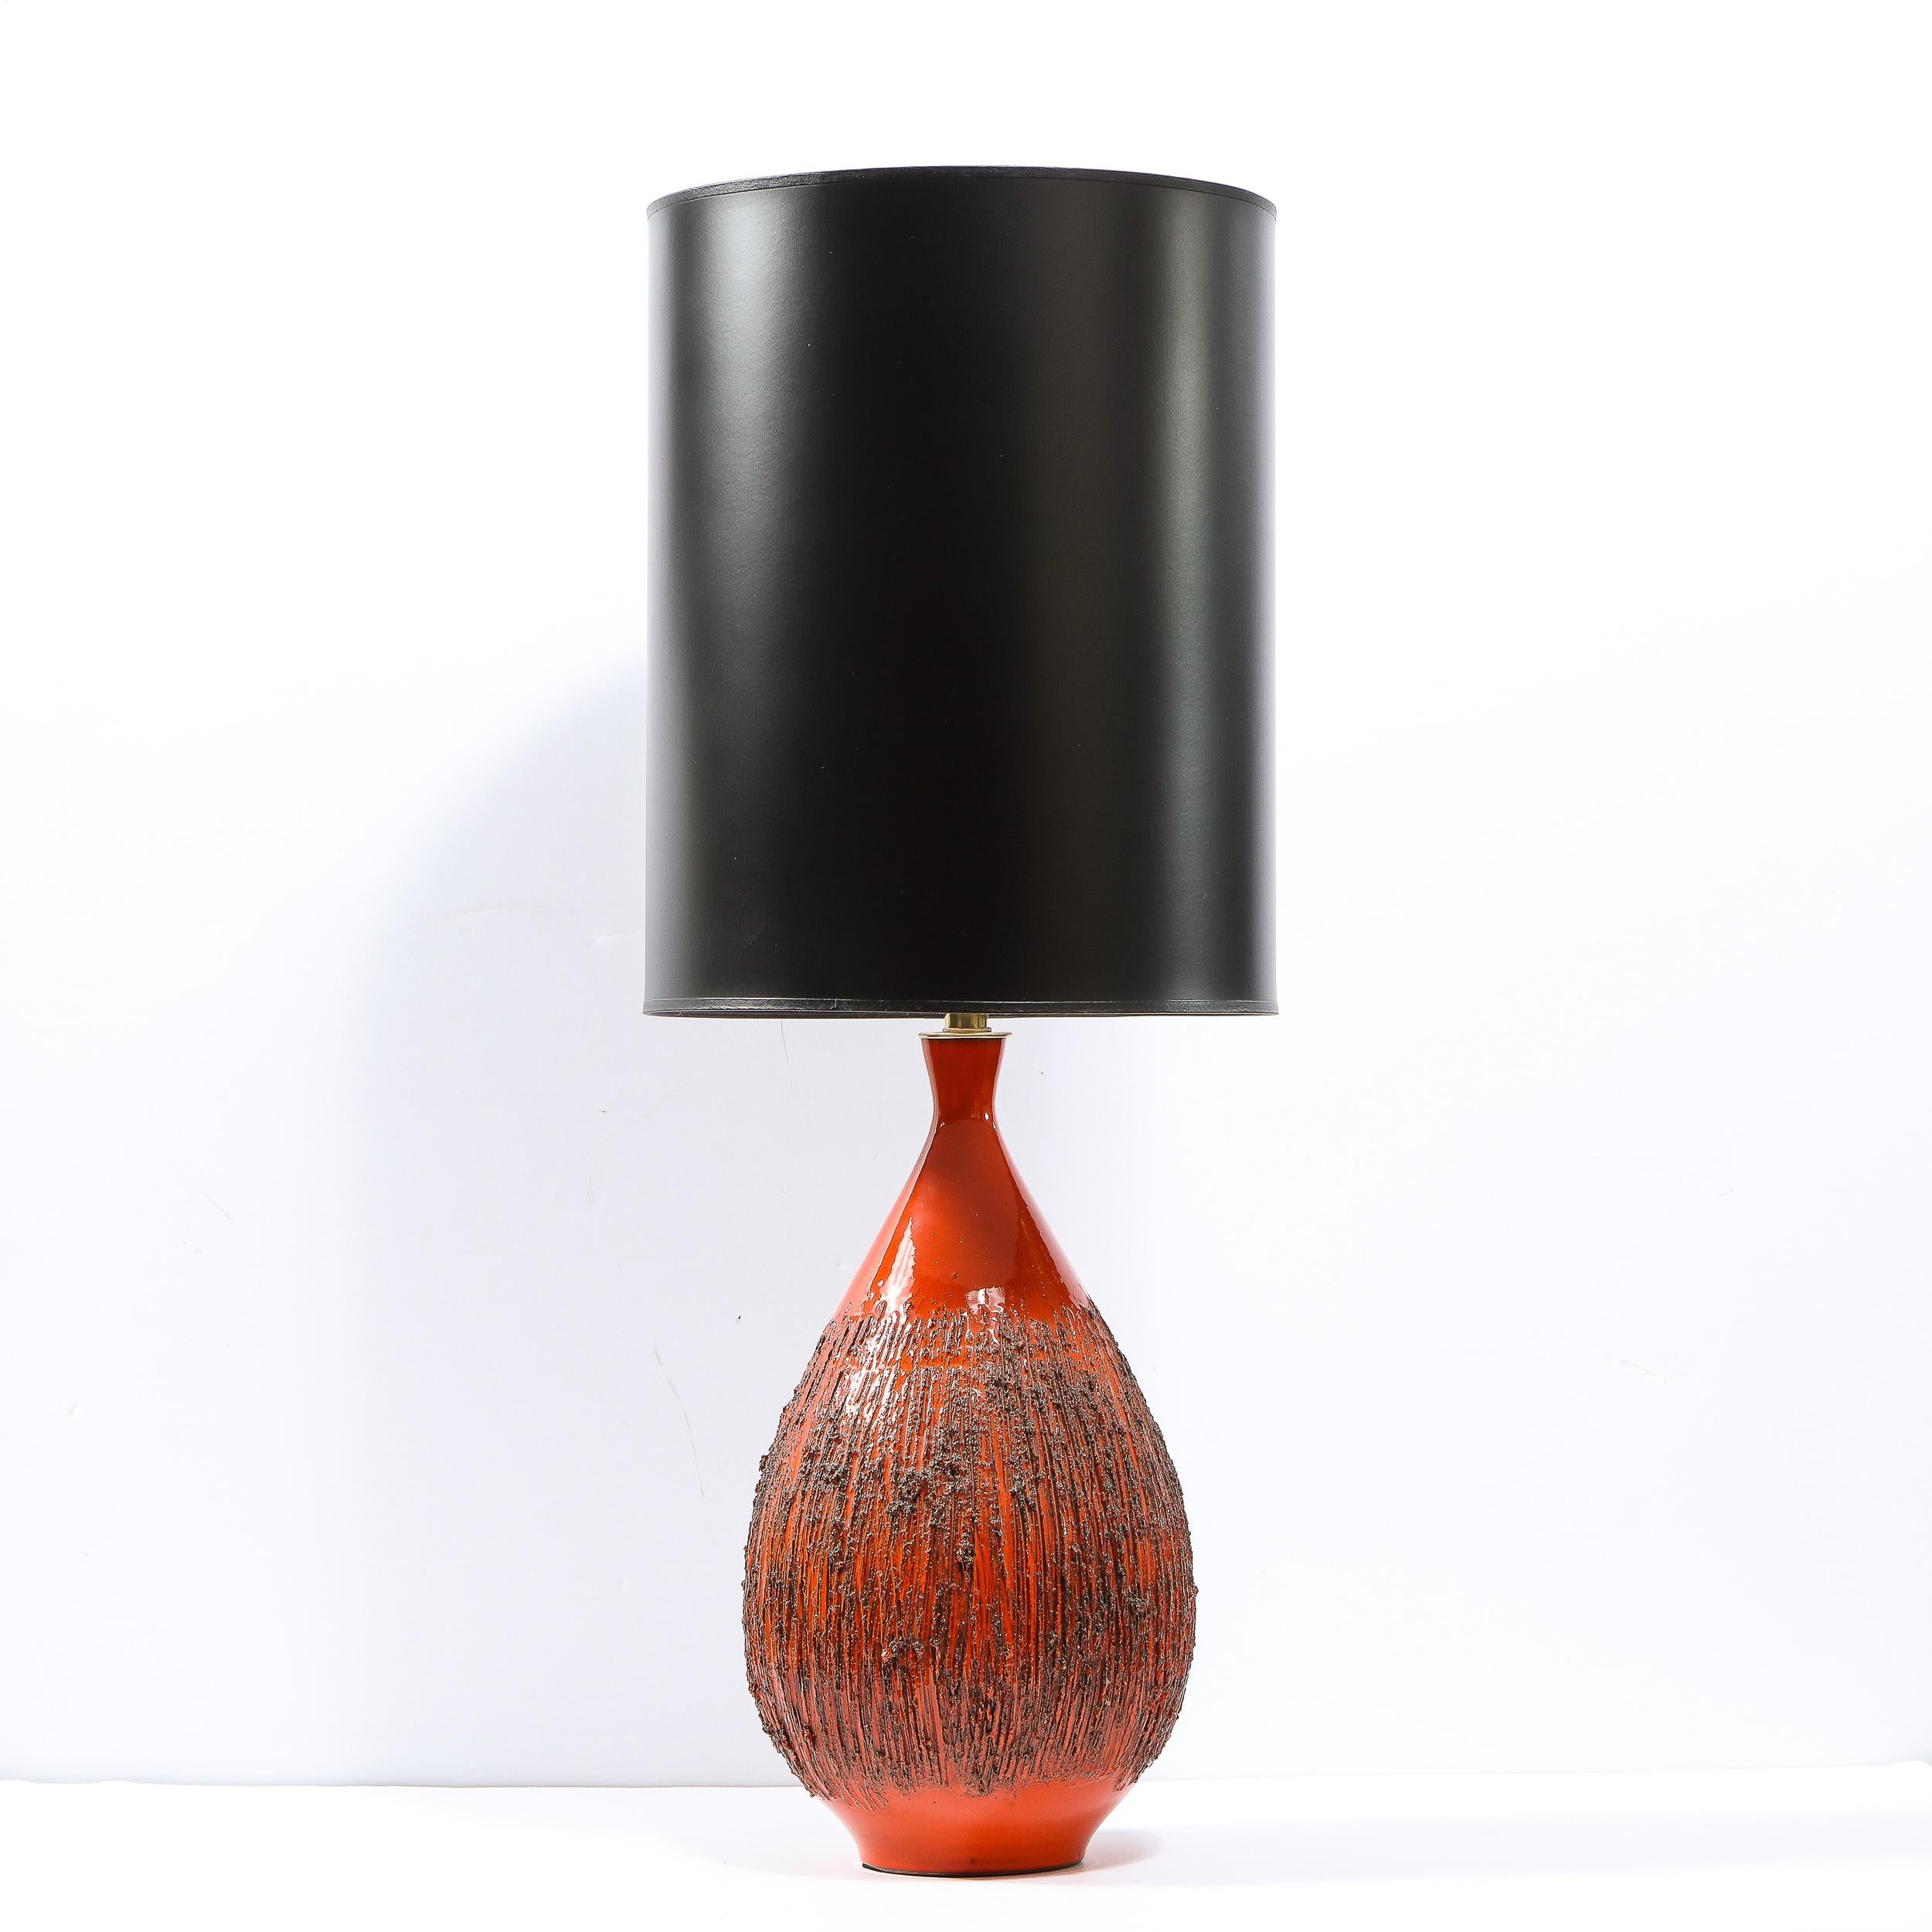 Cette exquise lampe de table moderne du milieu du siècle a été conçue par Lee Rosen pour Design Technics aux États-Unis vers 1960. Il présente une forme de goutte d'eau dans une glaçure rouge orangé fondu volcanique, ainsi qu'une surface organique